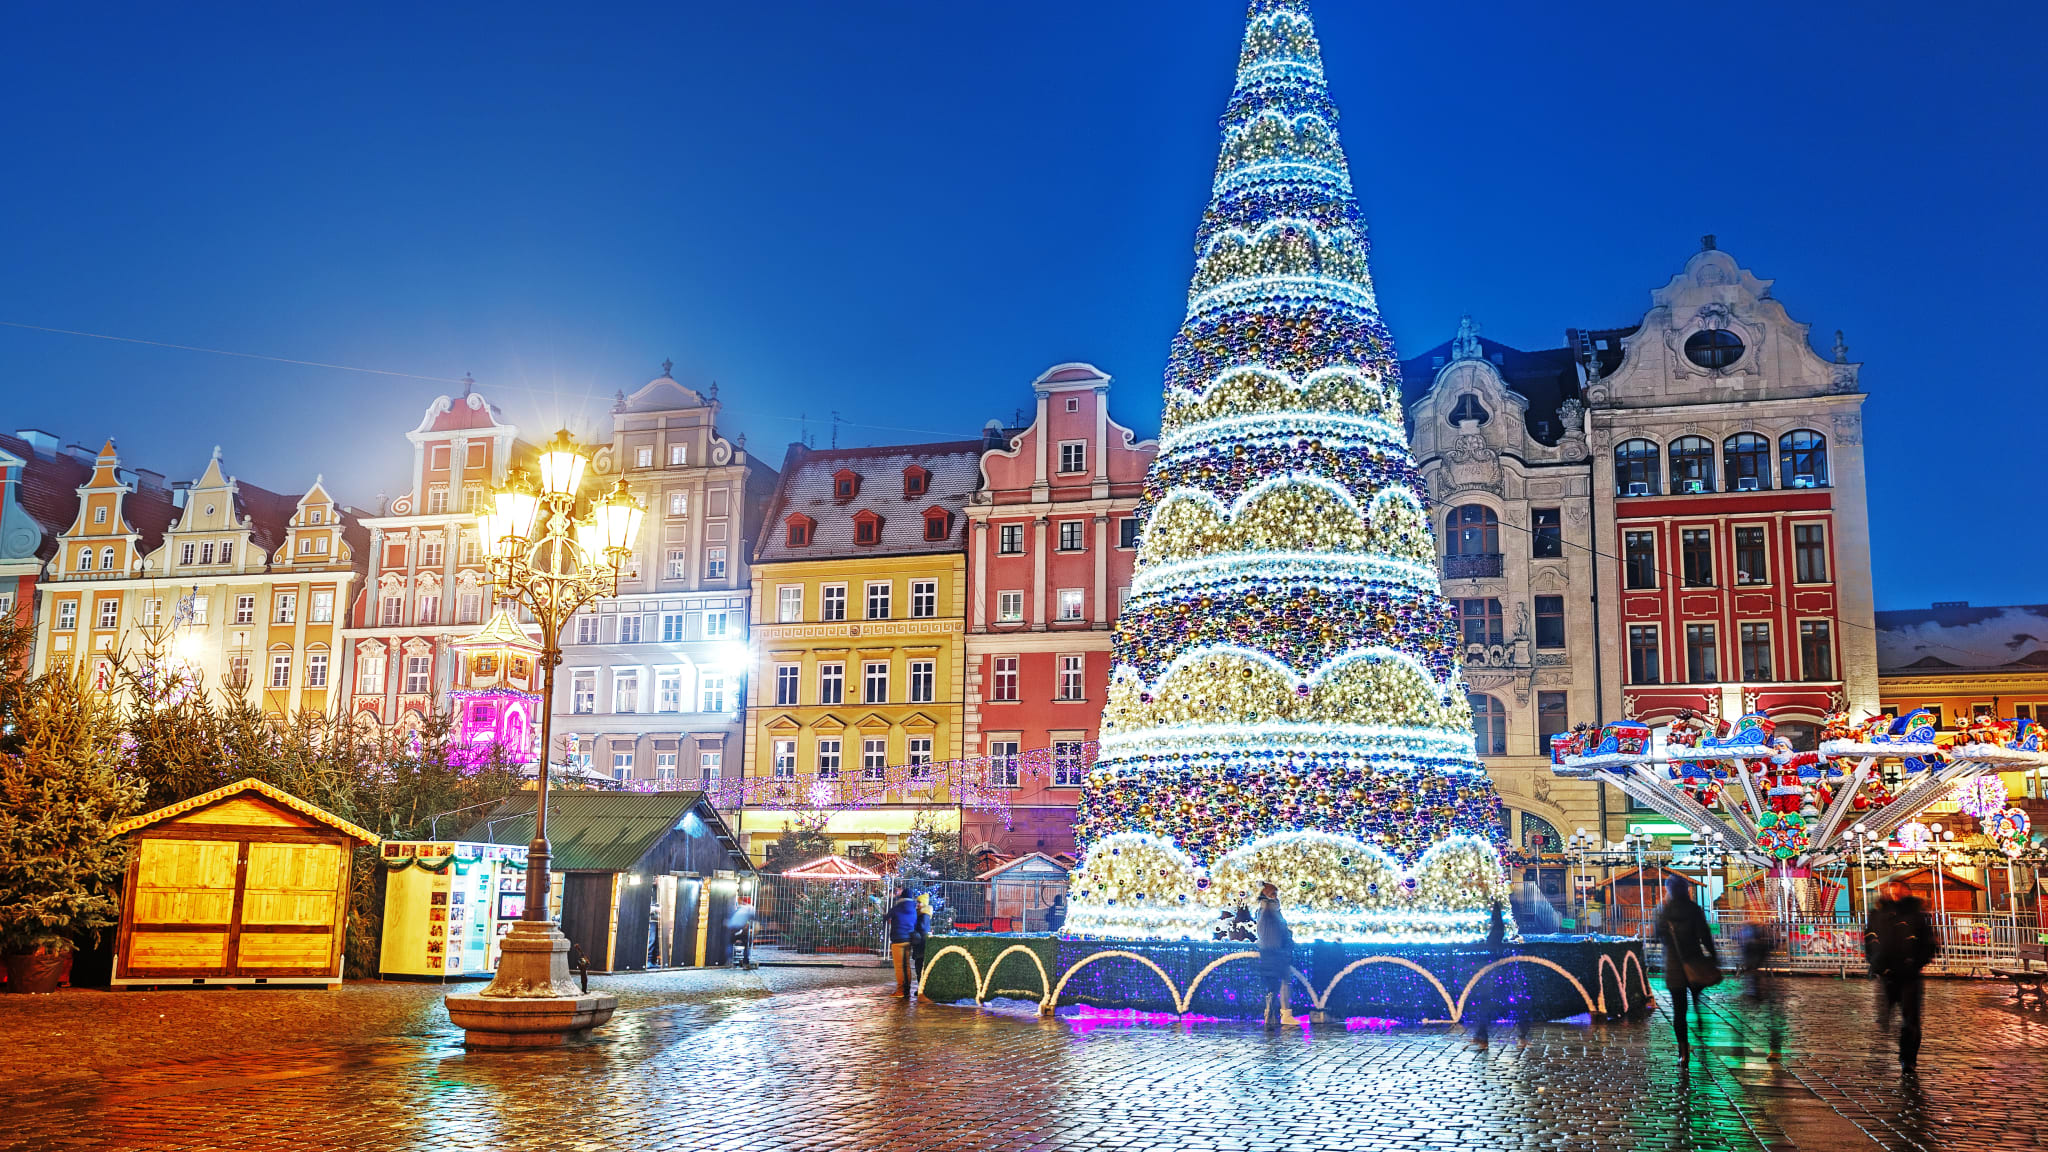 Maktplatz Weihnachten und beleuchteter Weihnachtsbaum in der Altstadt©/ Ihor_Tailwand/ iStock / Getty Images Plus via Getty Images